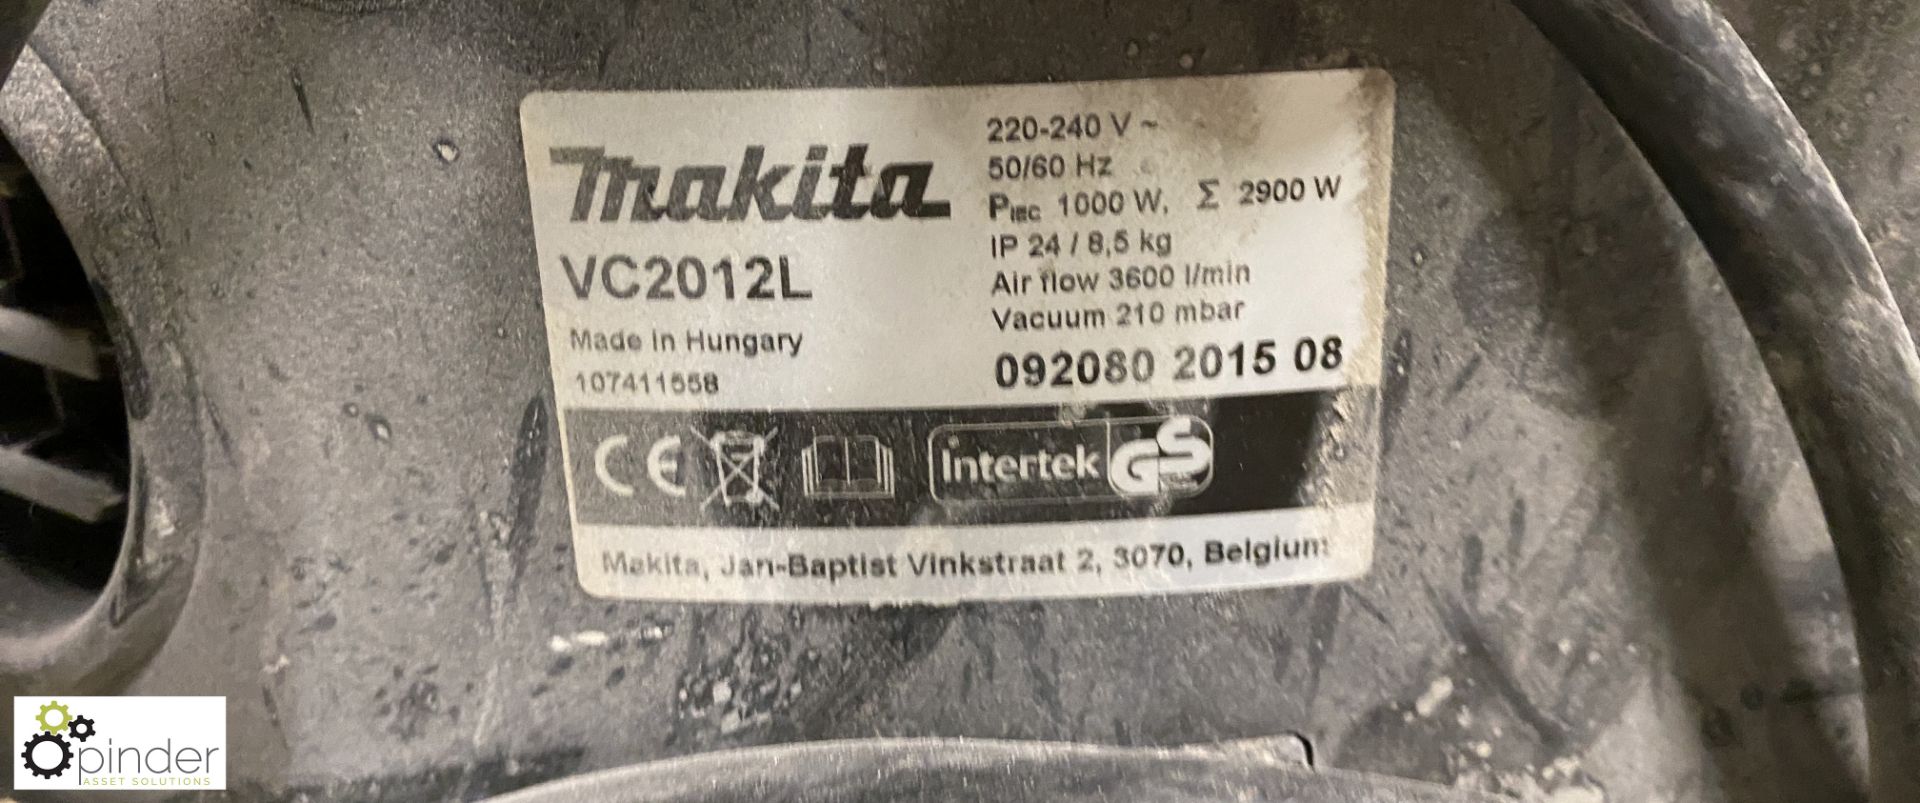 Makita VC2012L Vacuum, 240volts - Image 3 of 4